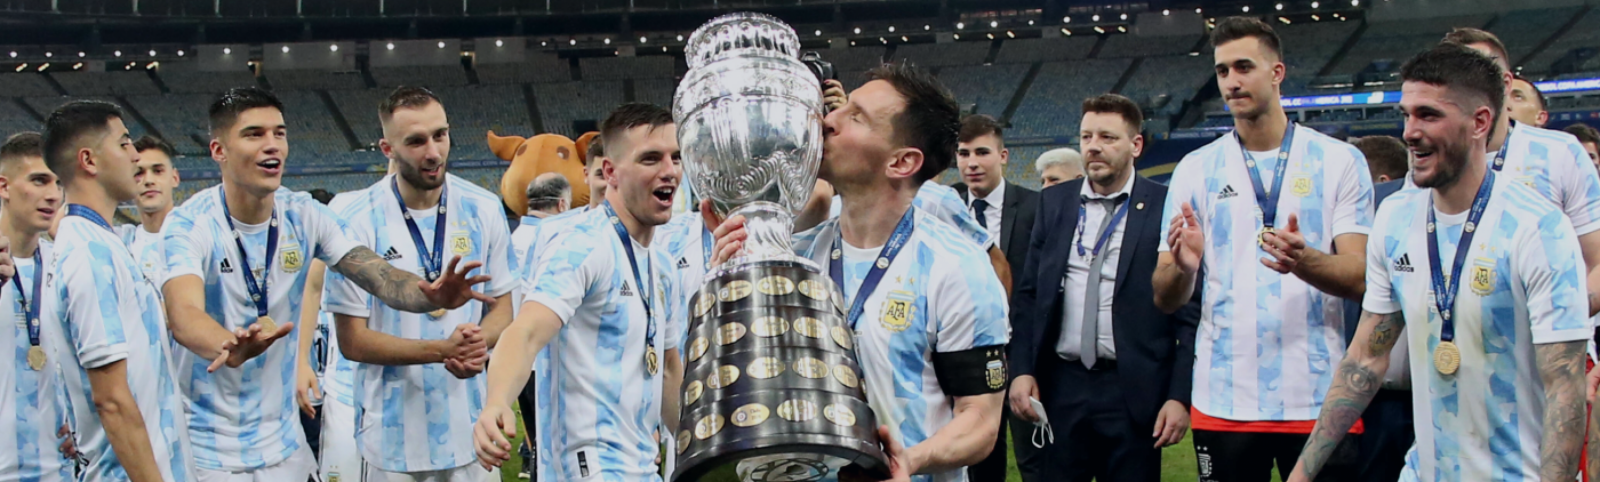 Imagen Messi besa la Copa y la gloria, el título tan buscado llegó al fin.